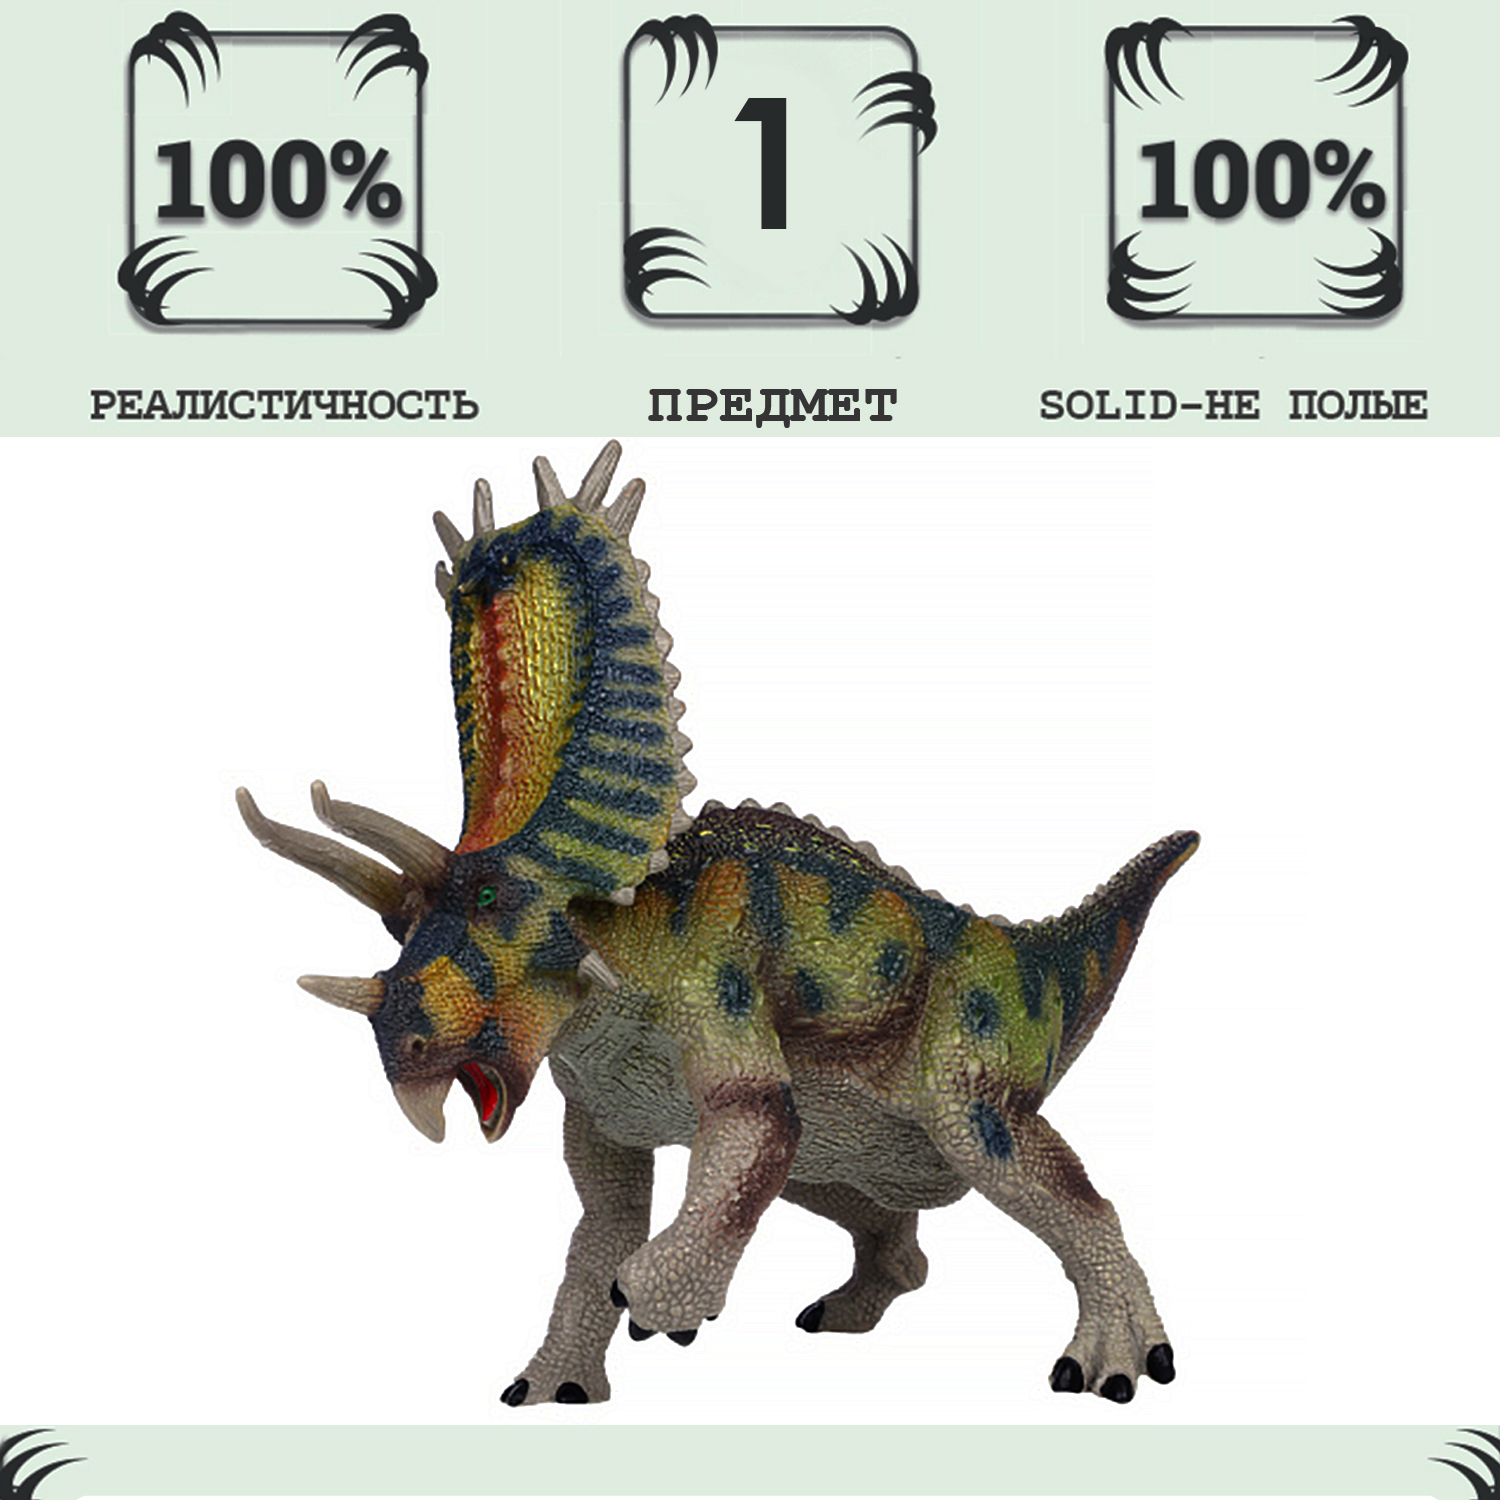 Игрушка динозавр серии Мир динозавров Masai Mara Пентацератопс MM216-088 masai mara динозавр питер пентацератопс